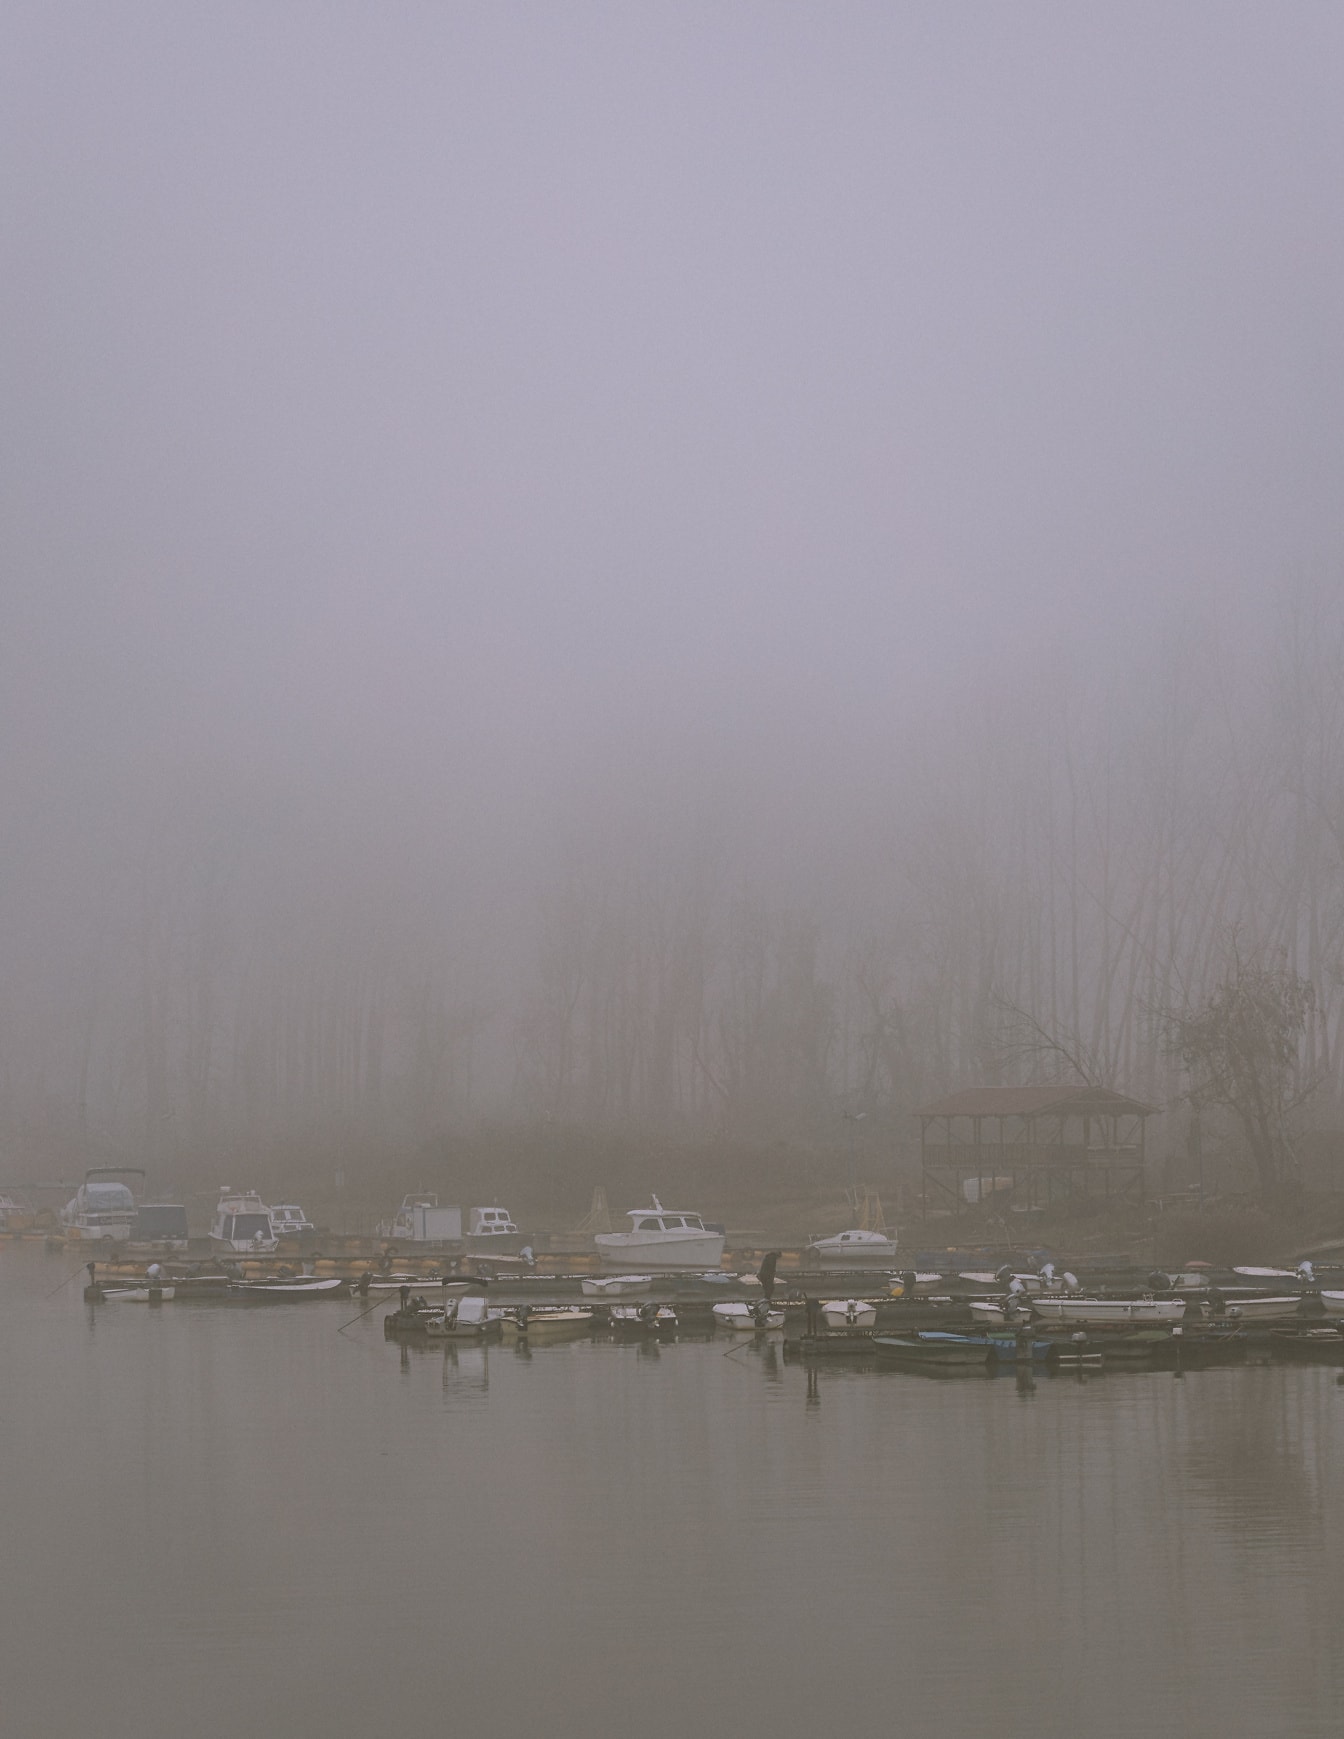 Pequeños barcos de pesca en el agua con densa niebla